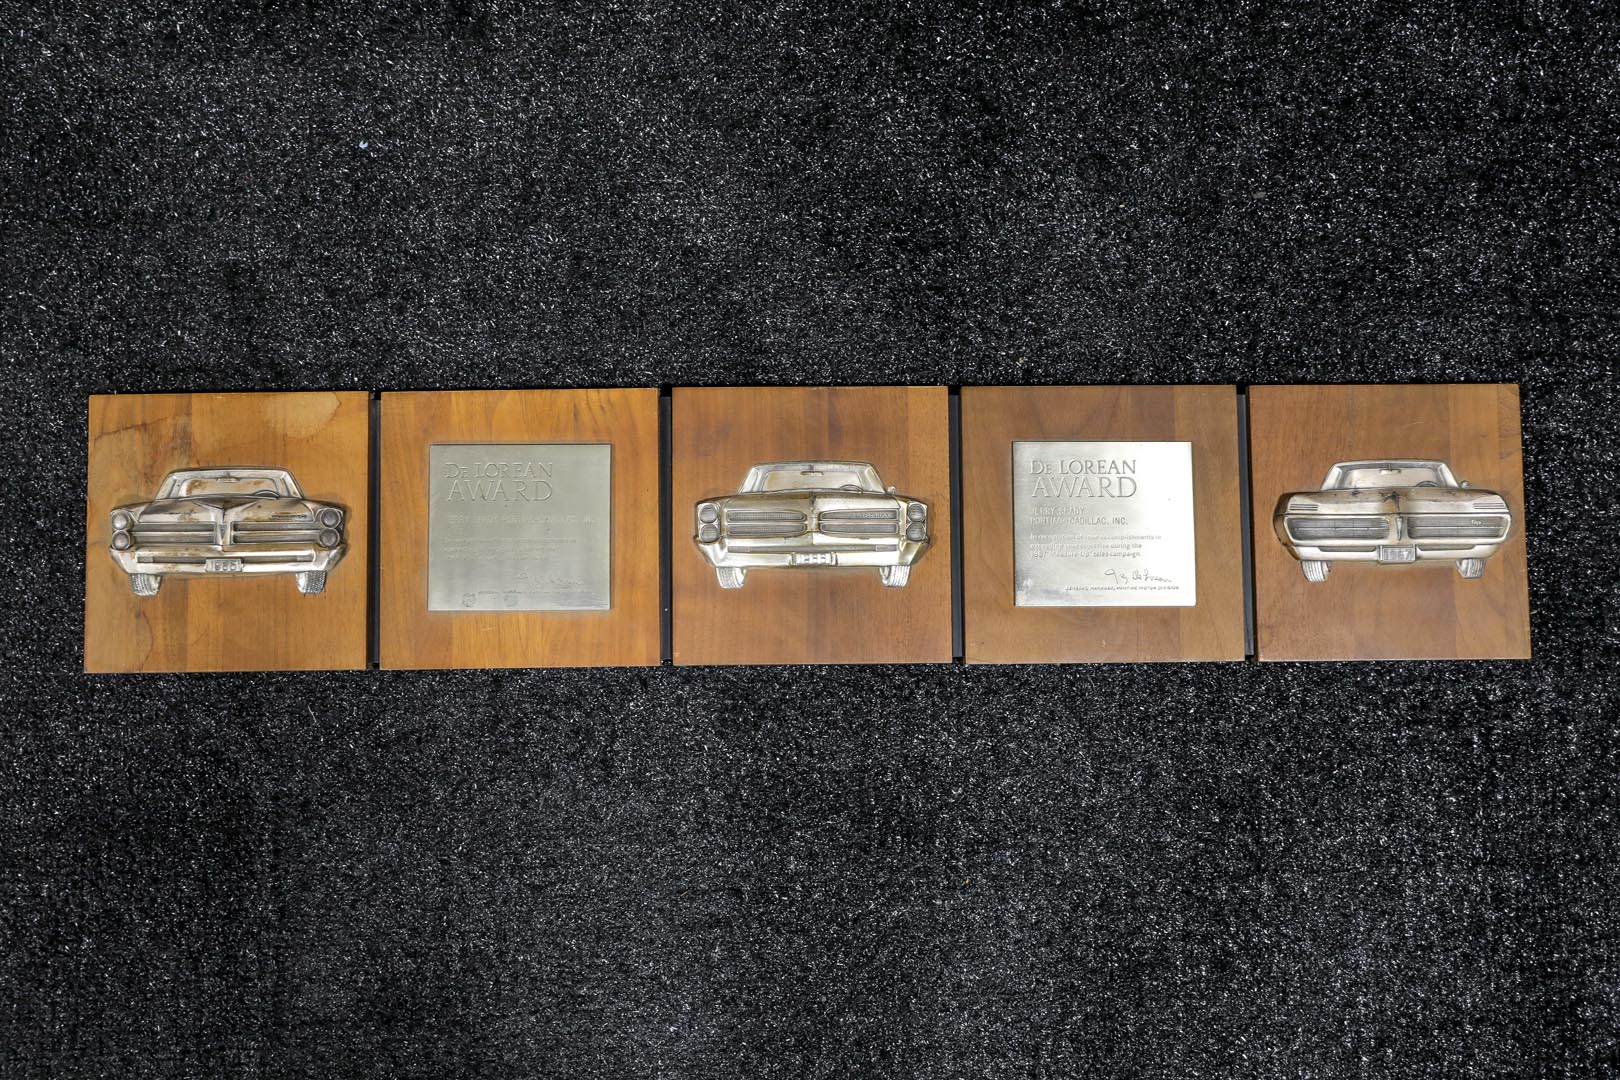  1966-1967 Pontiac DeLorean Dea ler Awards 